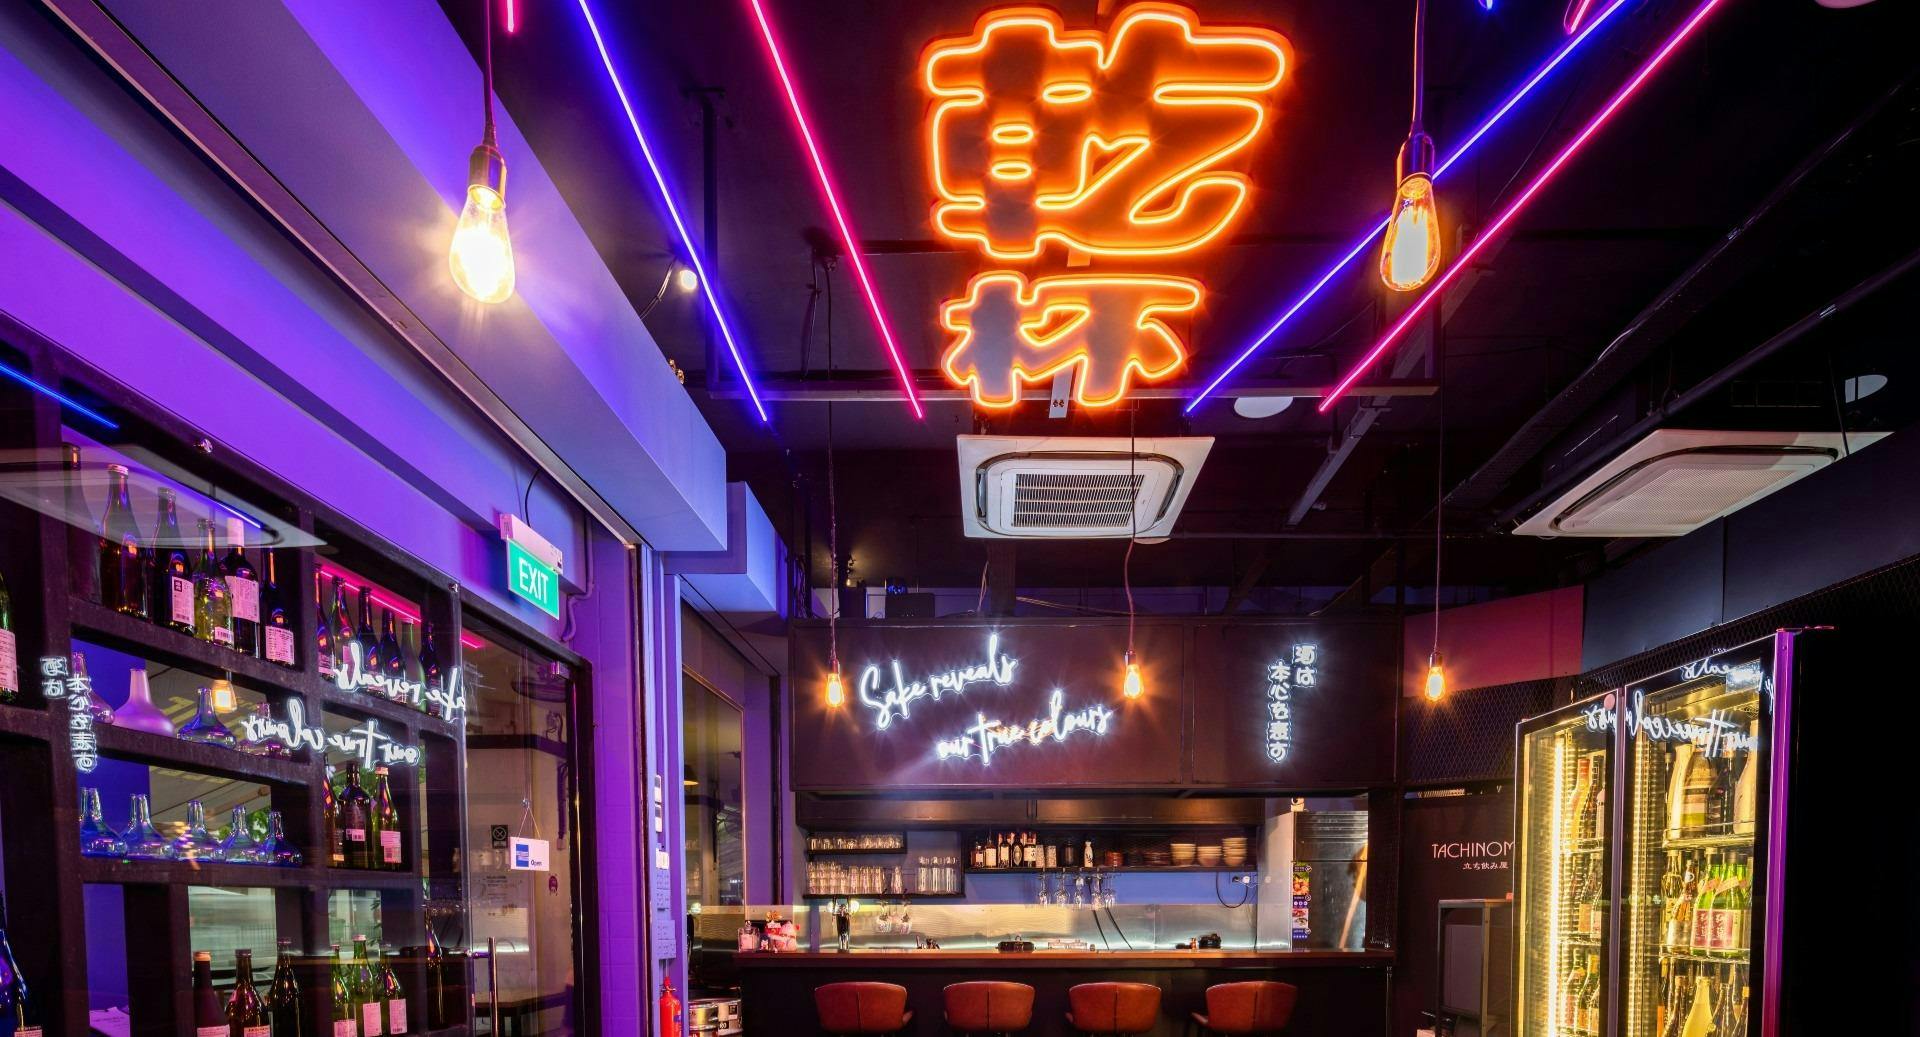 Photo of restaurant Tachinomiya (Katong) Izakaya & Bar in Katong, Singapore